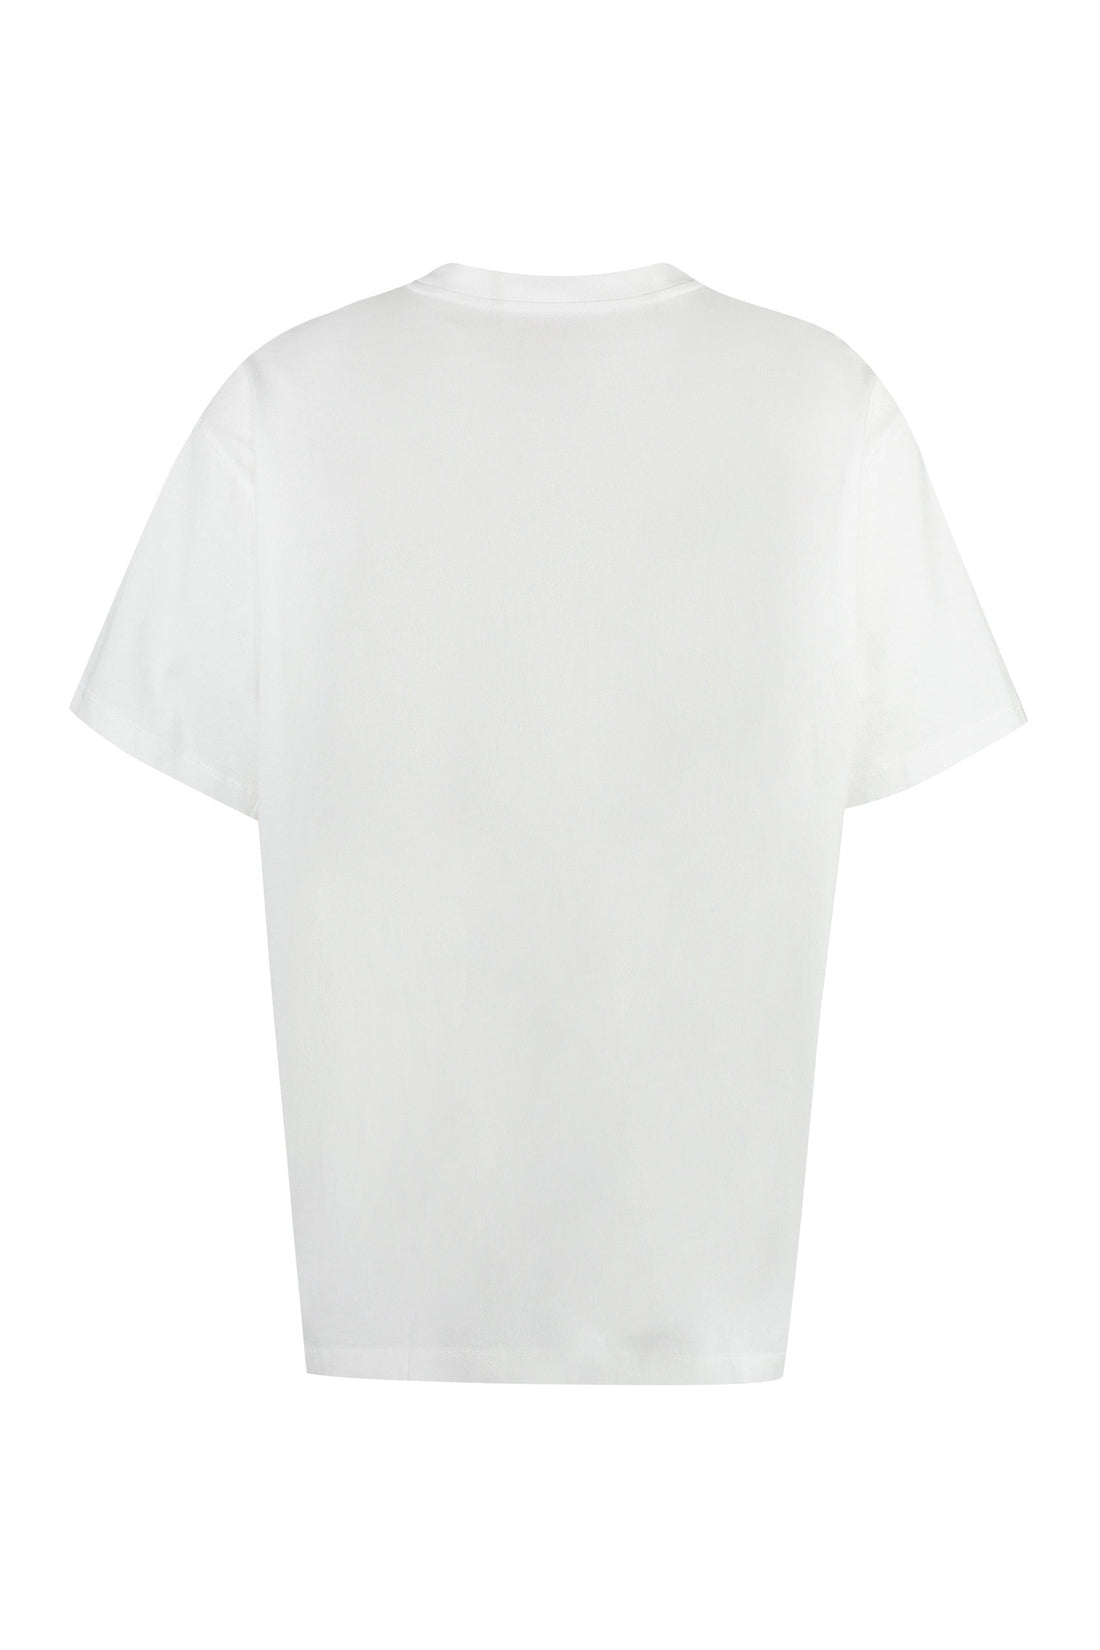 Off-White-OUTLET-SALE-Cotton crew-neck T-shirt-ARCHIVIST